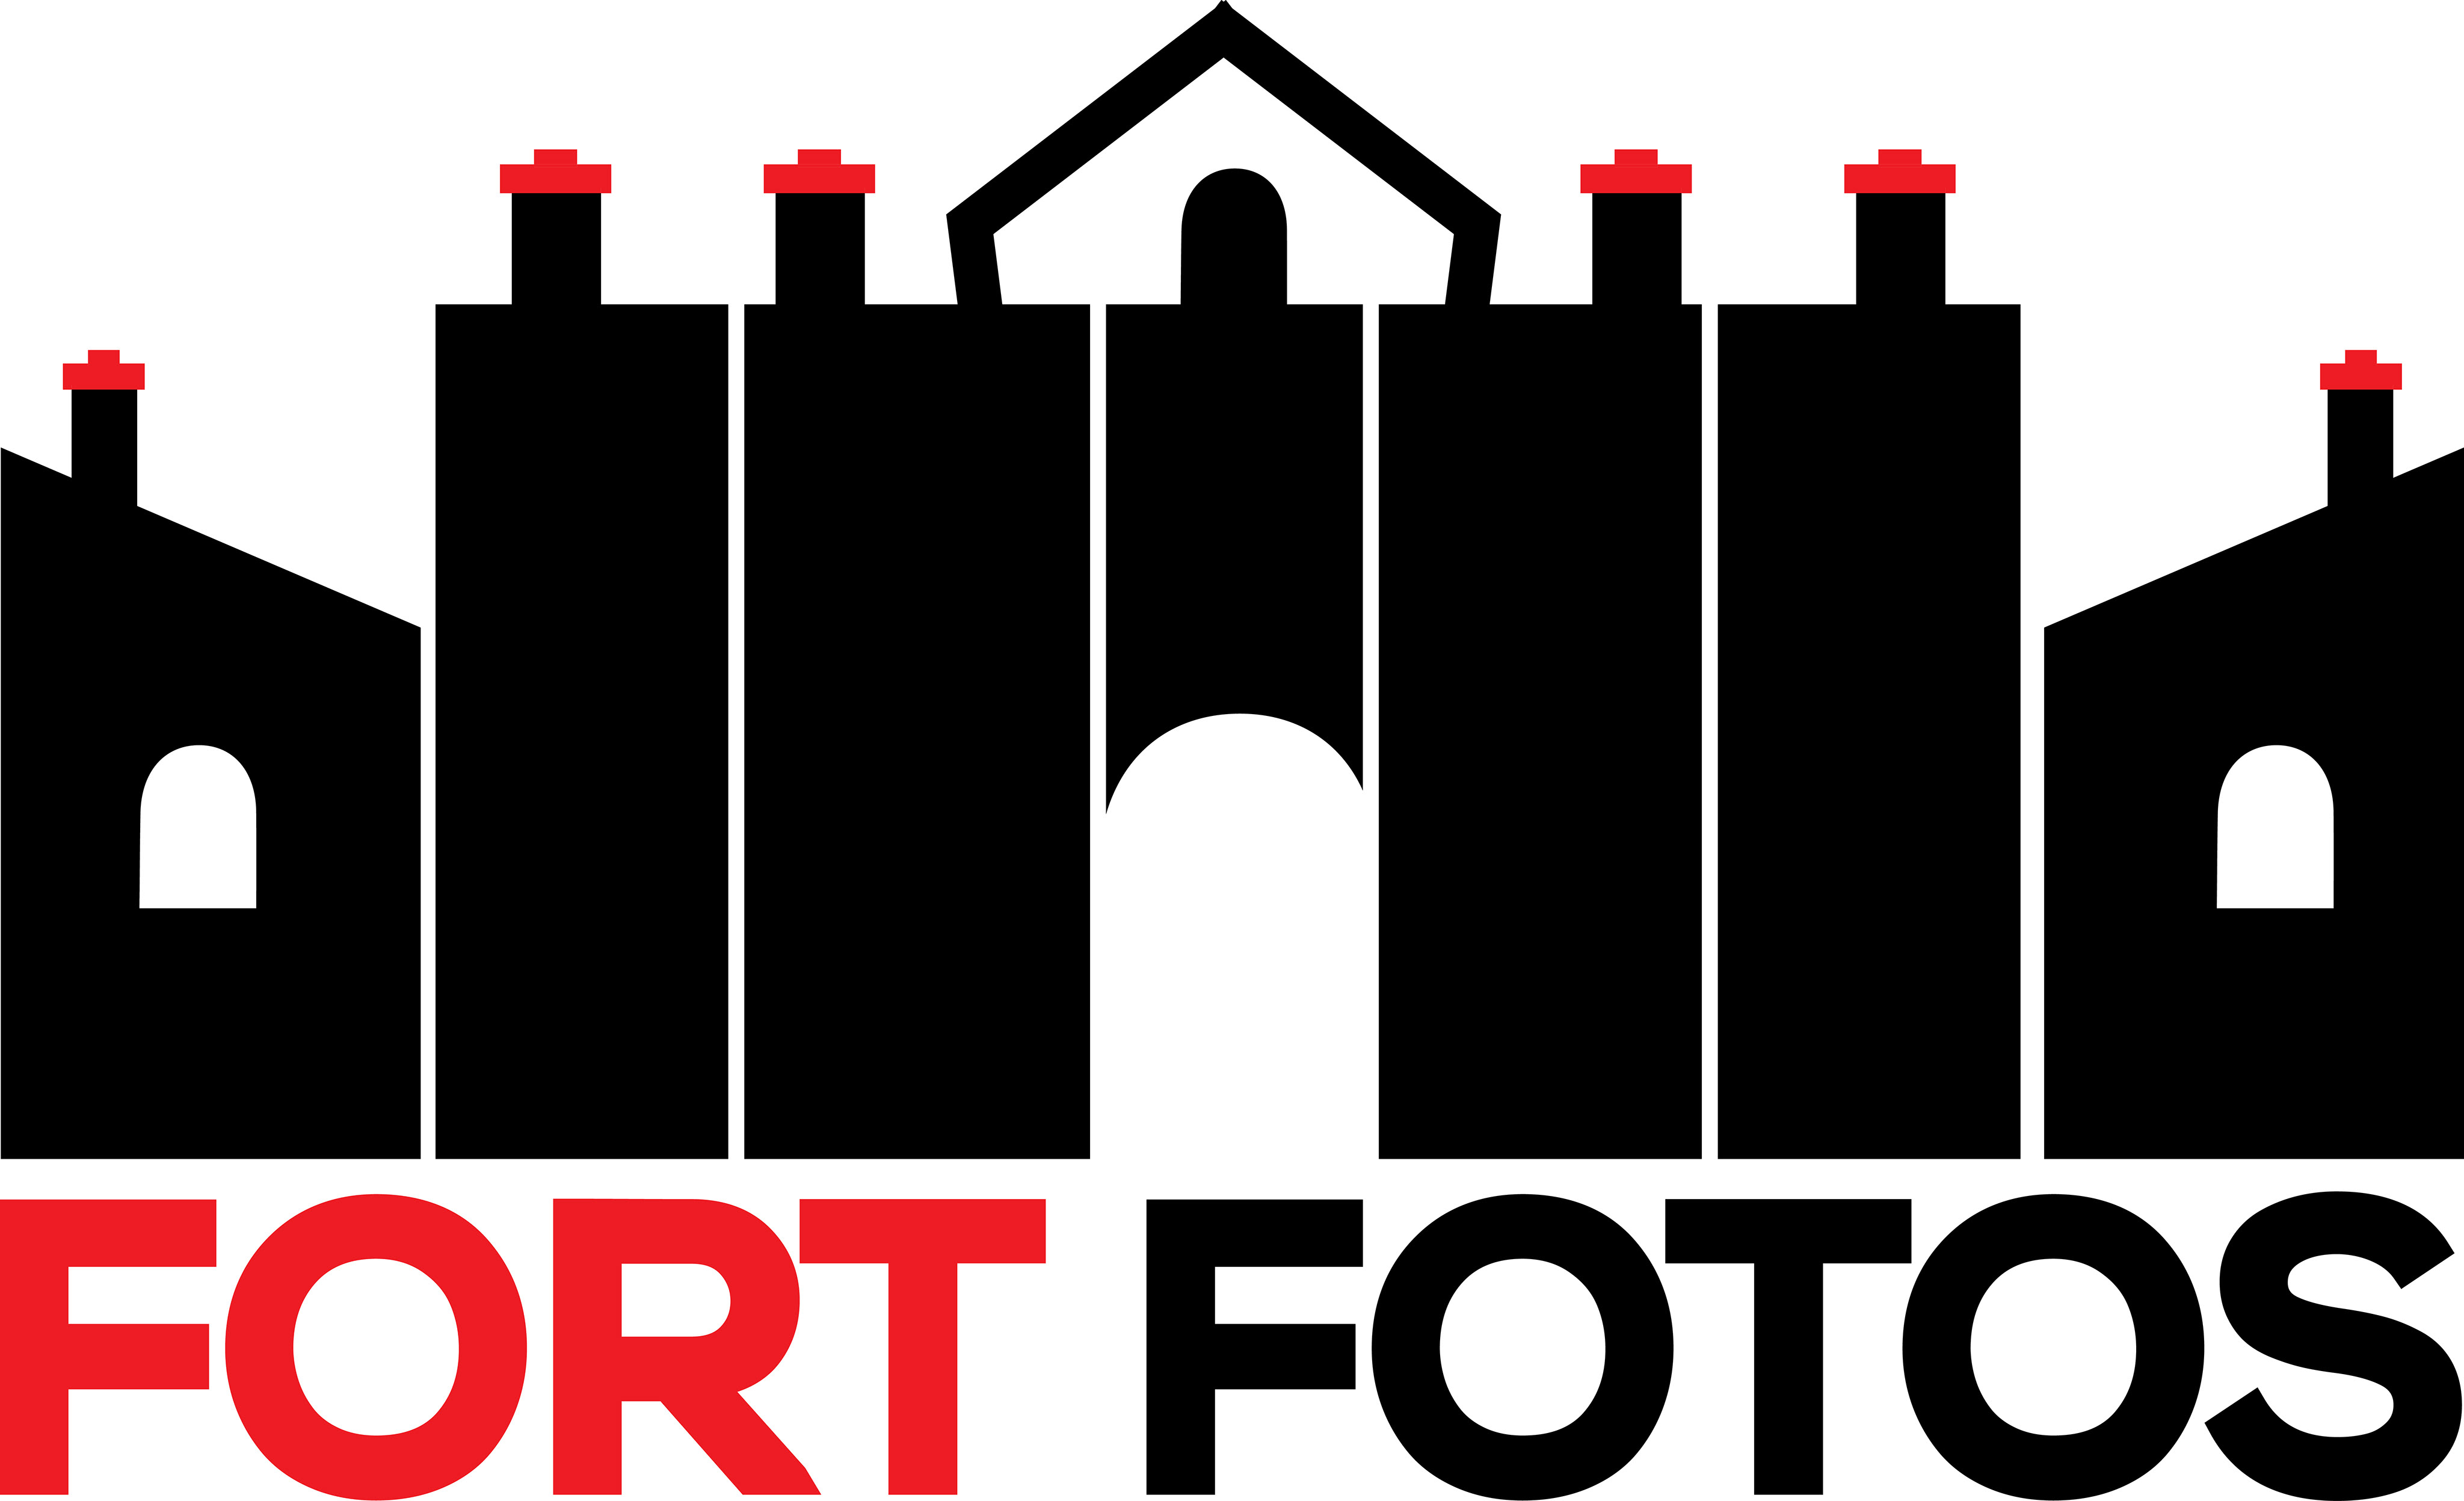 Fort Fotos Logo